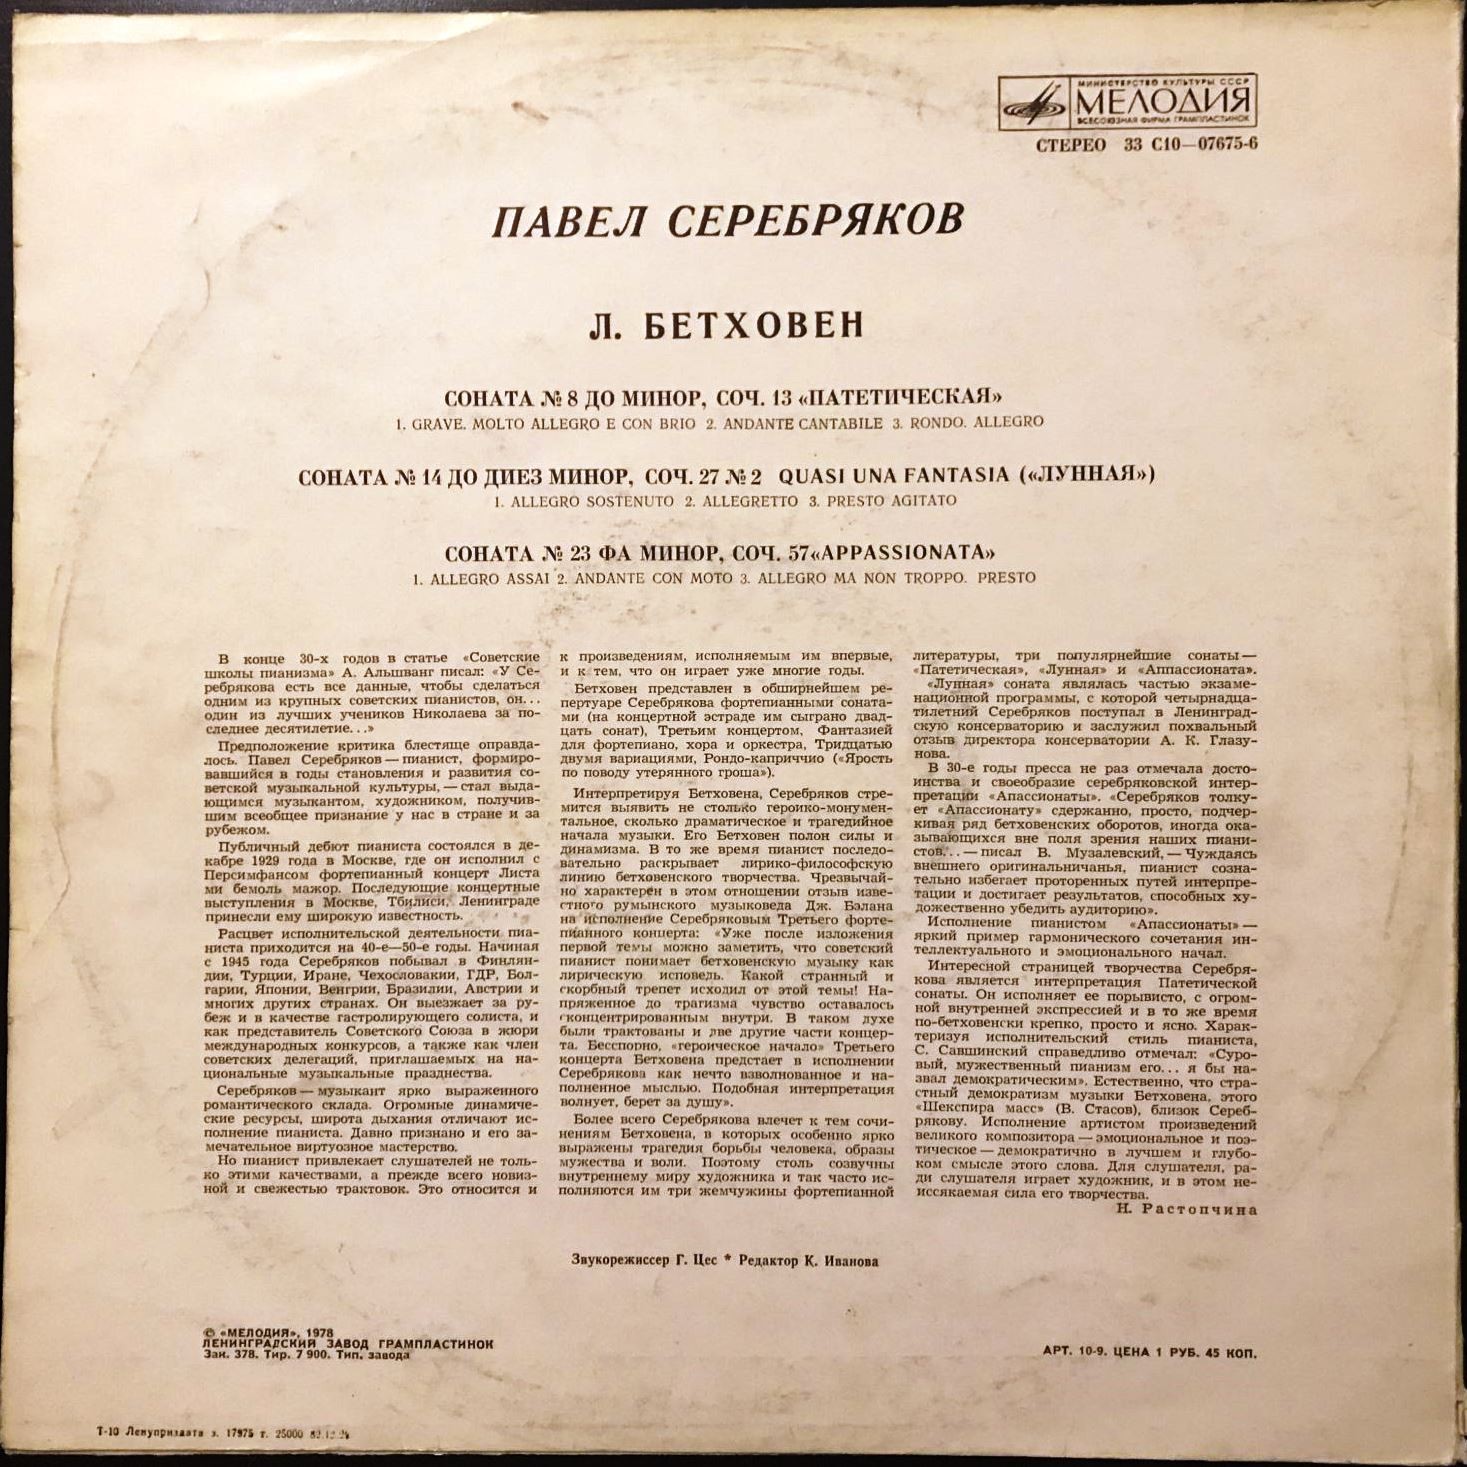 Л. Бетховен: Сонаты для ф-но №№ 8, 14, 23 (Павел Серебряков)